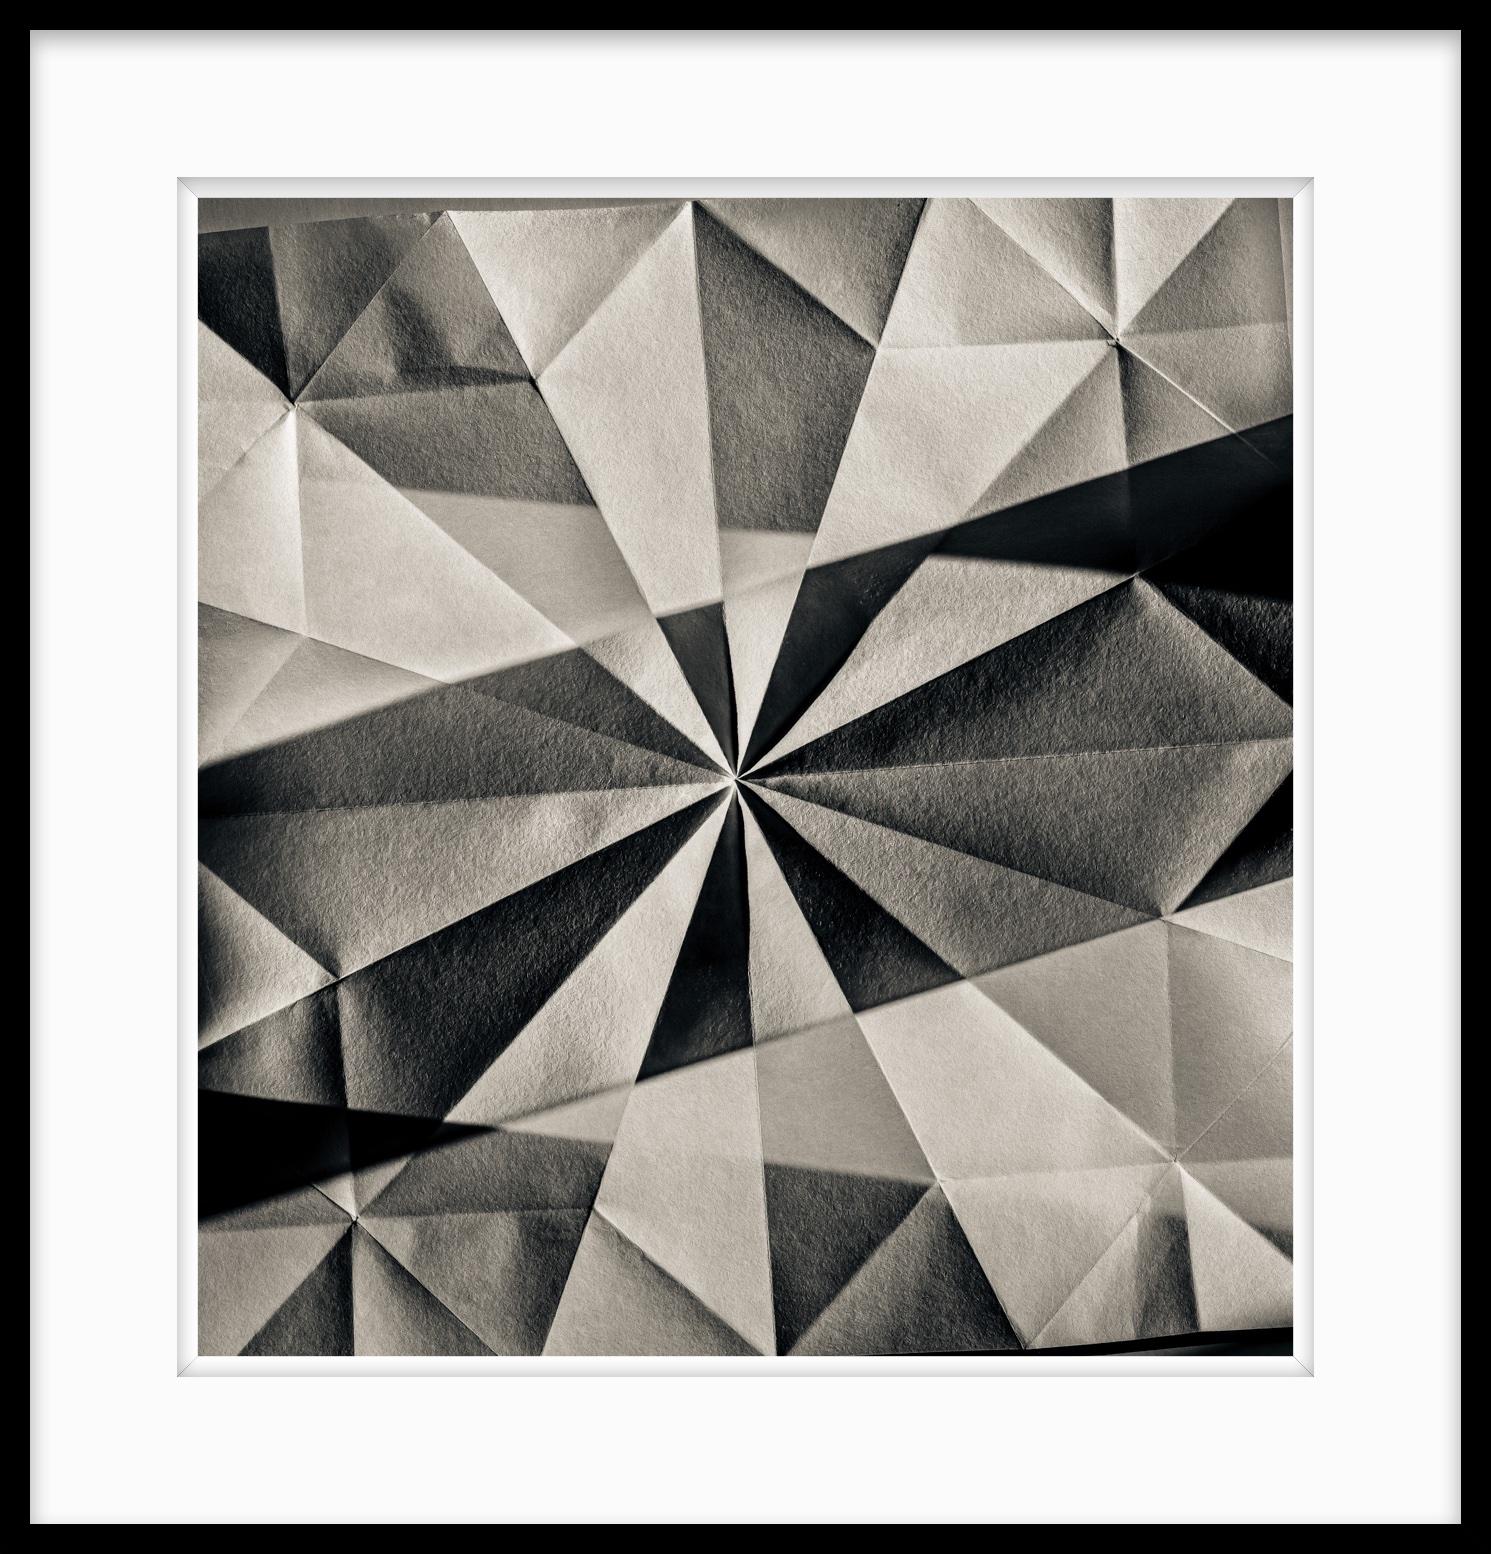  Abstrakte Fotografie in limitierter Auflage in Schwarz-Weiß – Origami-Form #17  – Photograph von Howard Lewis